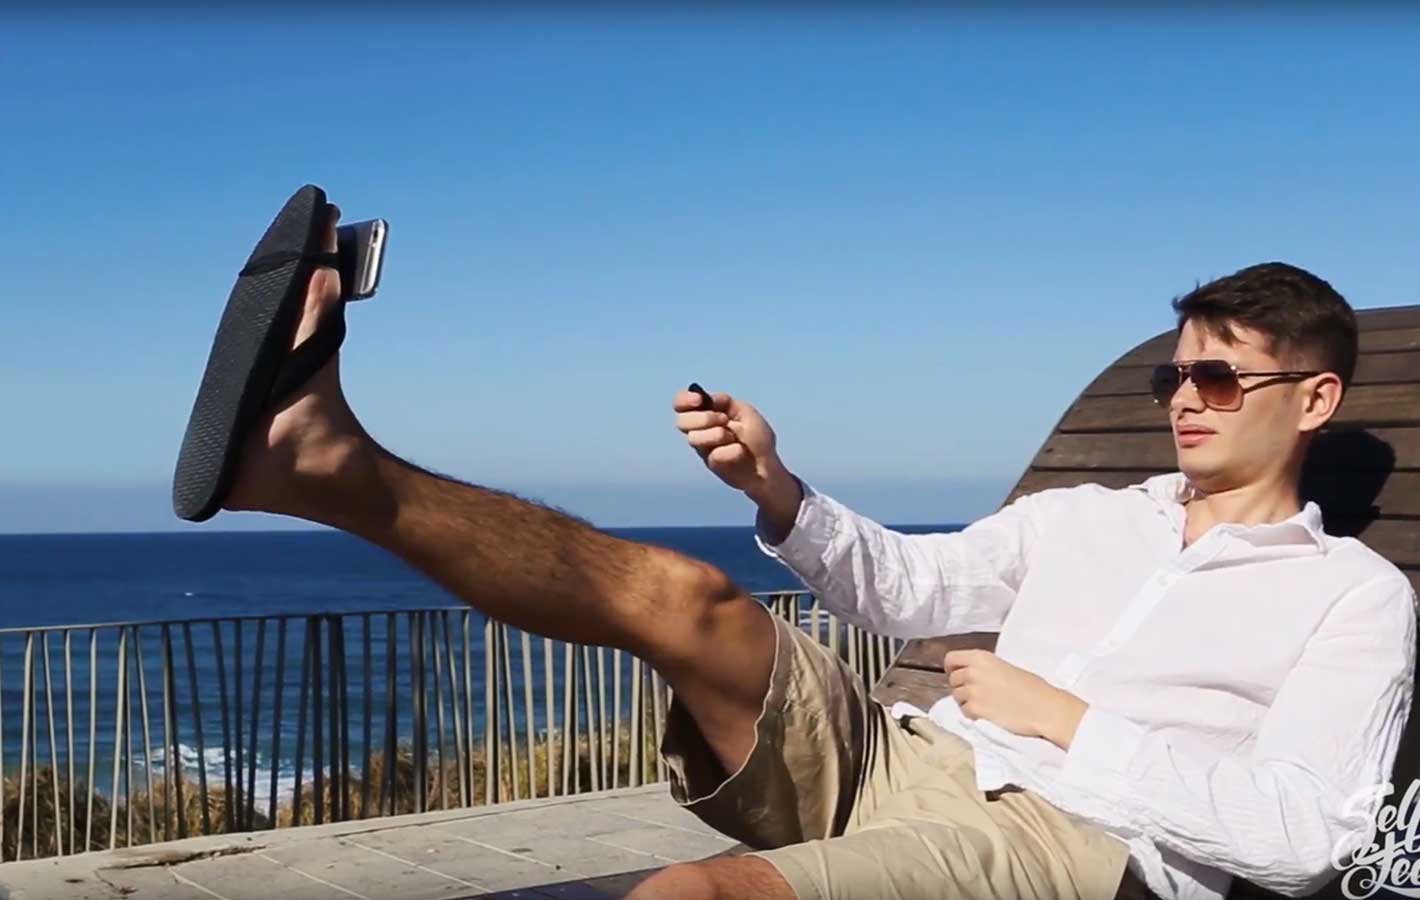 Oto najnowszy wynalazek ludzkości: zrób selfie swoją nogą